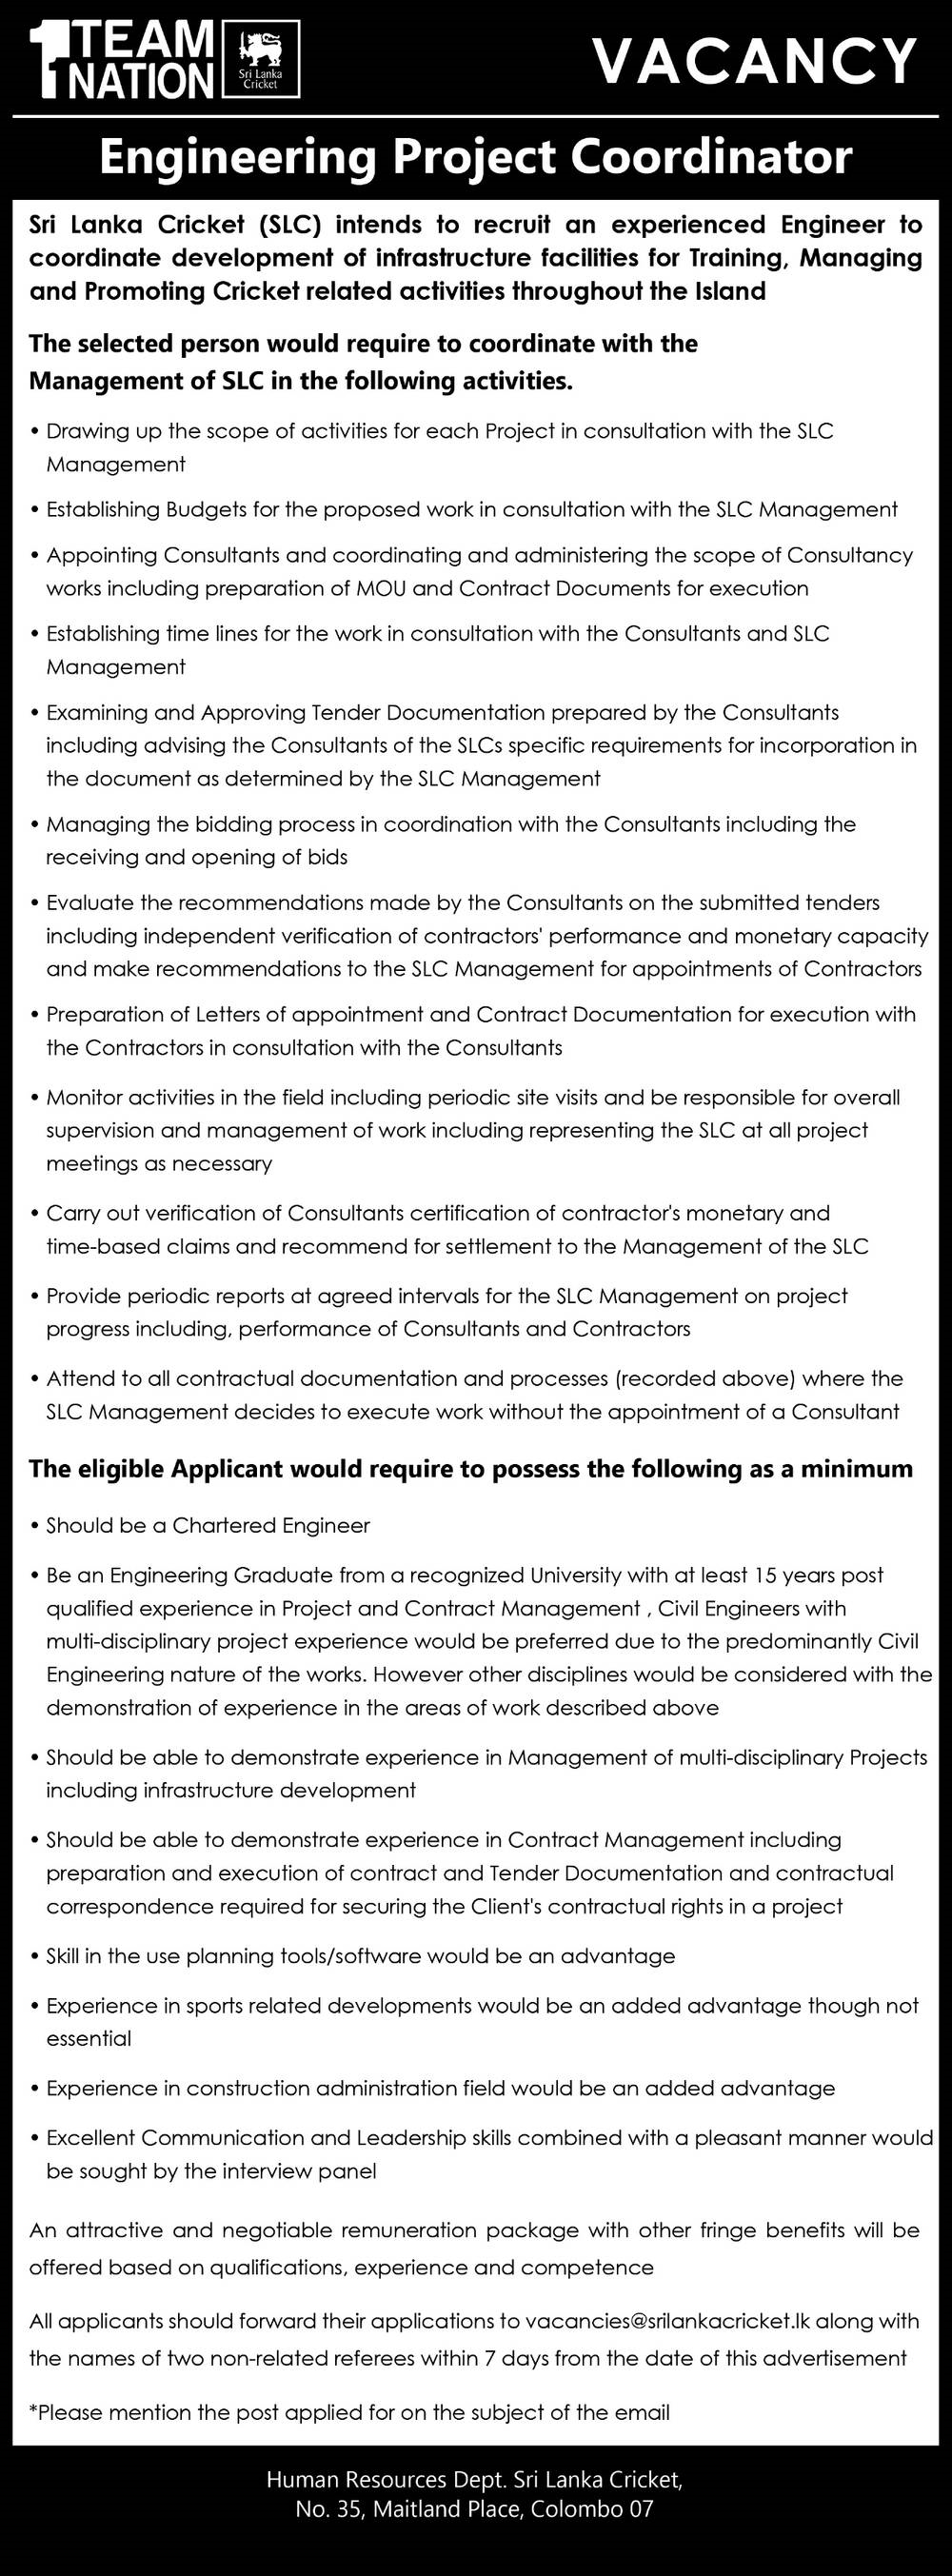 Sri Lanka Cricket Vacancies 2022 for Engineering Project Coordinator